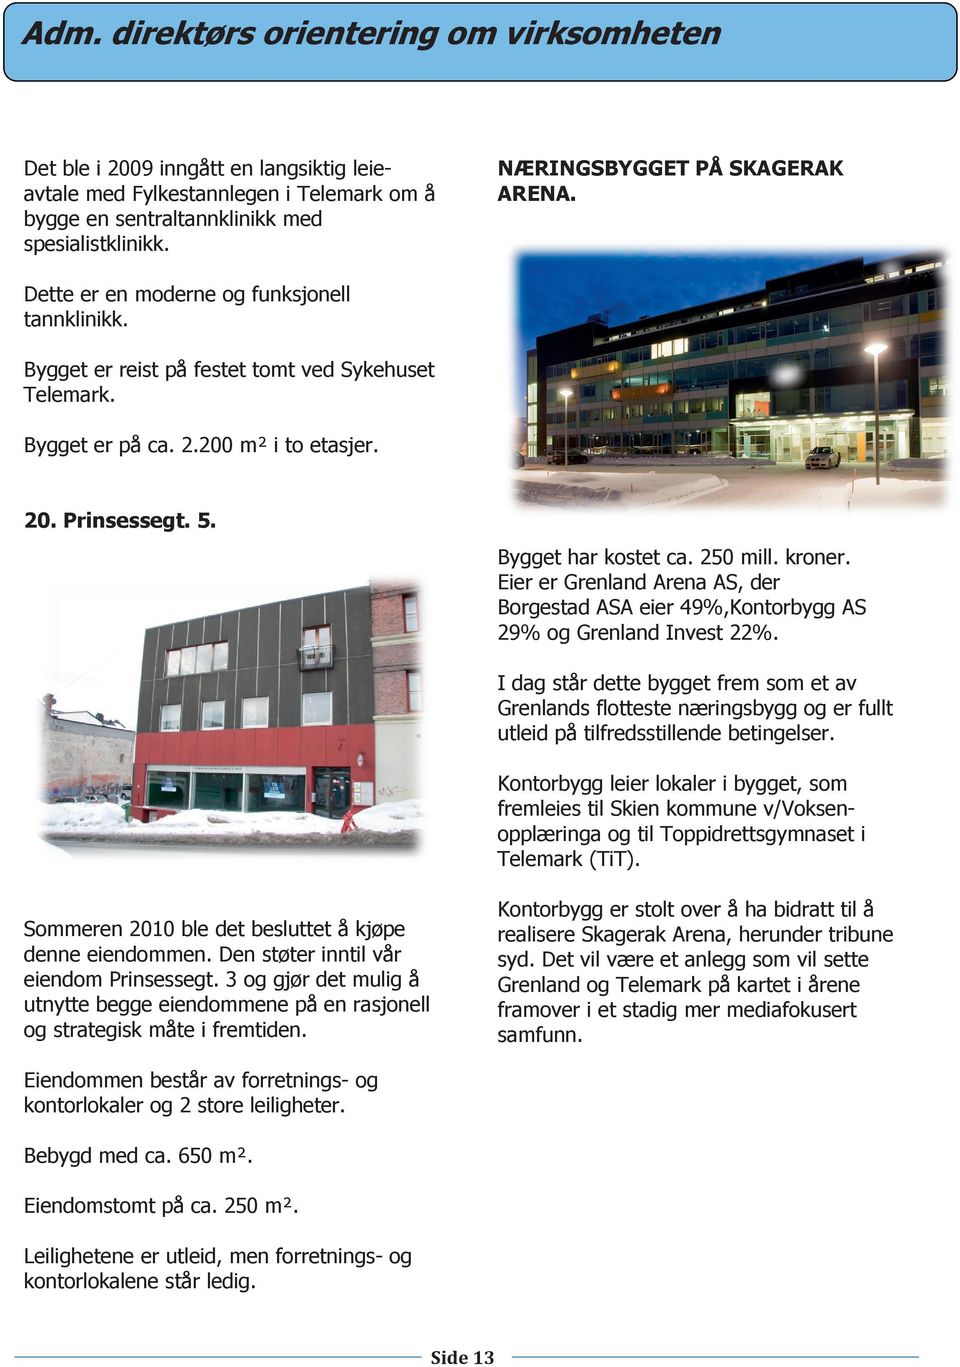 Bygget har kostet ca. 250 mill. kroner. Eier er Grenland Arena AS, der Borgestad ASA eier 49%,Kontorbygg AS 29% og Grenland Invest 22%.